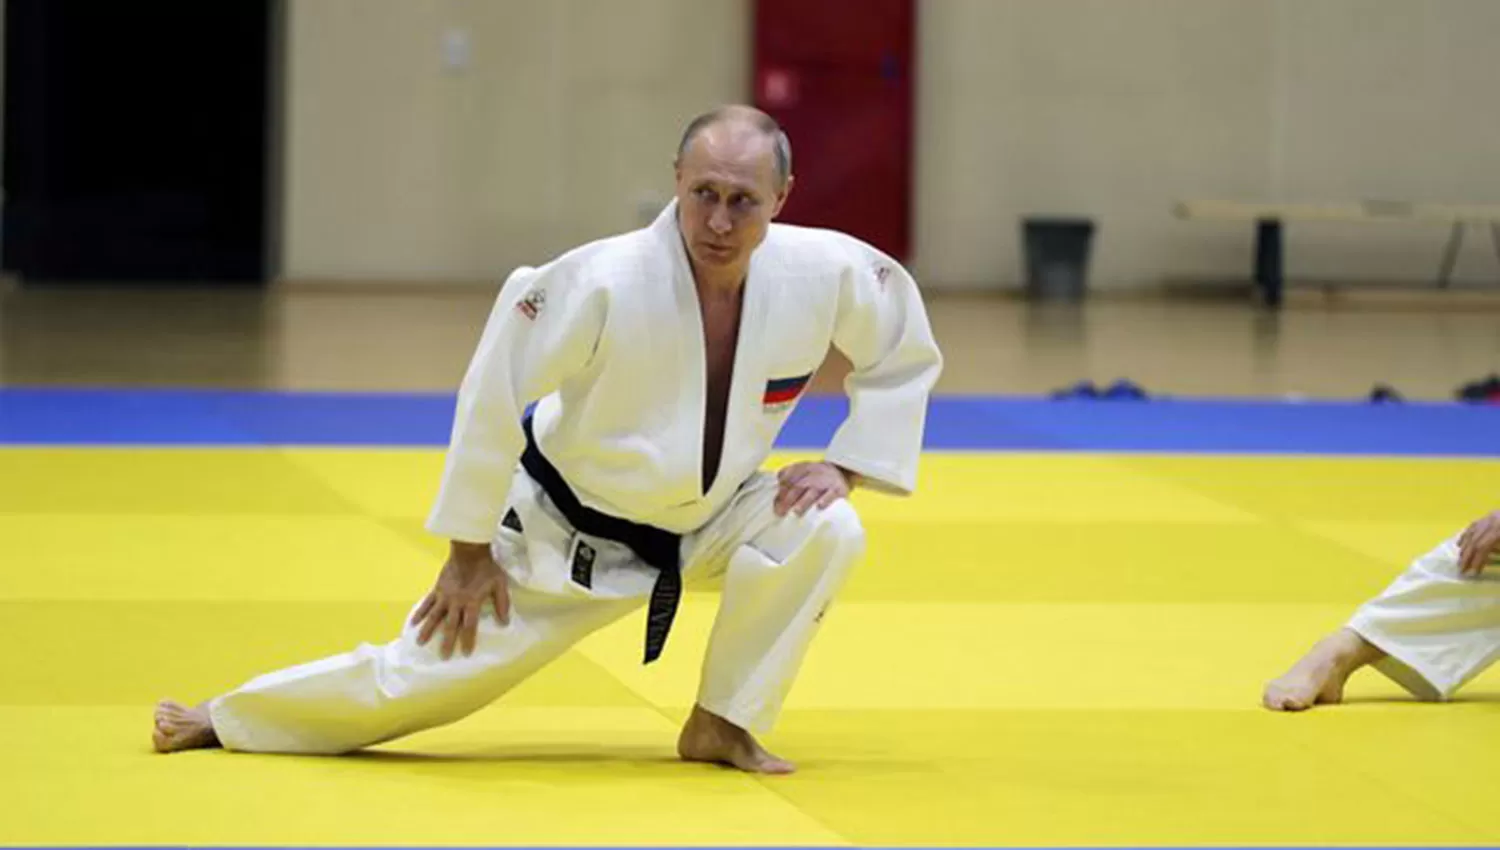 AFICIONADO. Putin practica habitualmente judo entre sus actividades físicas.